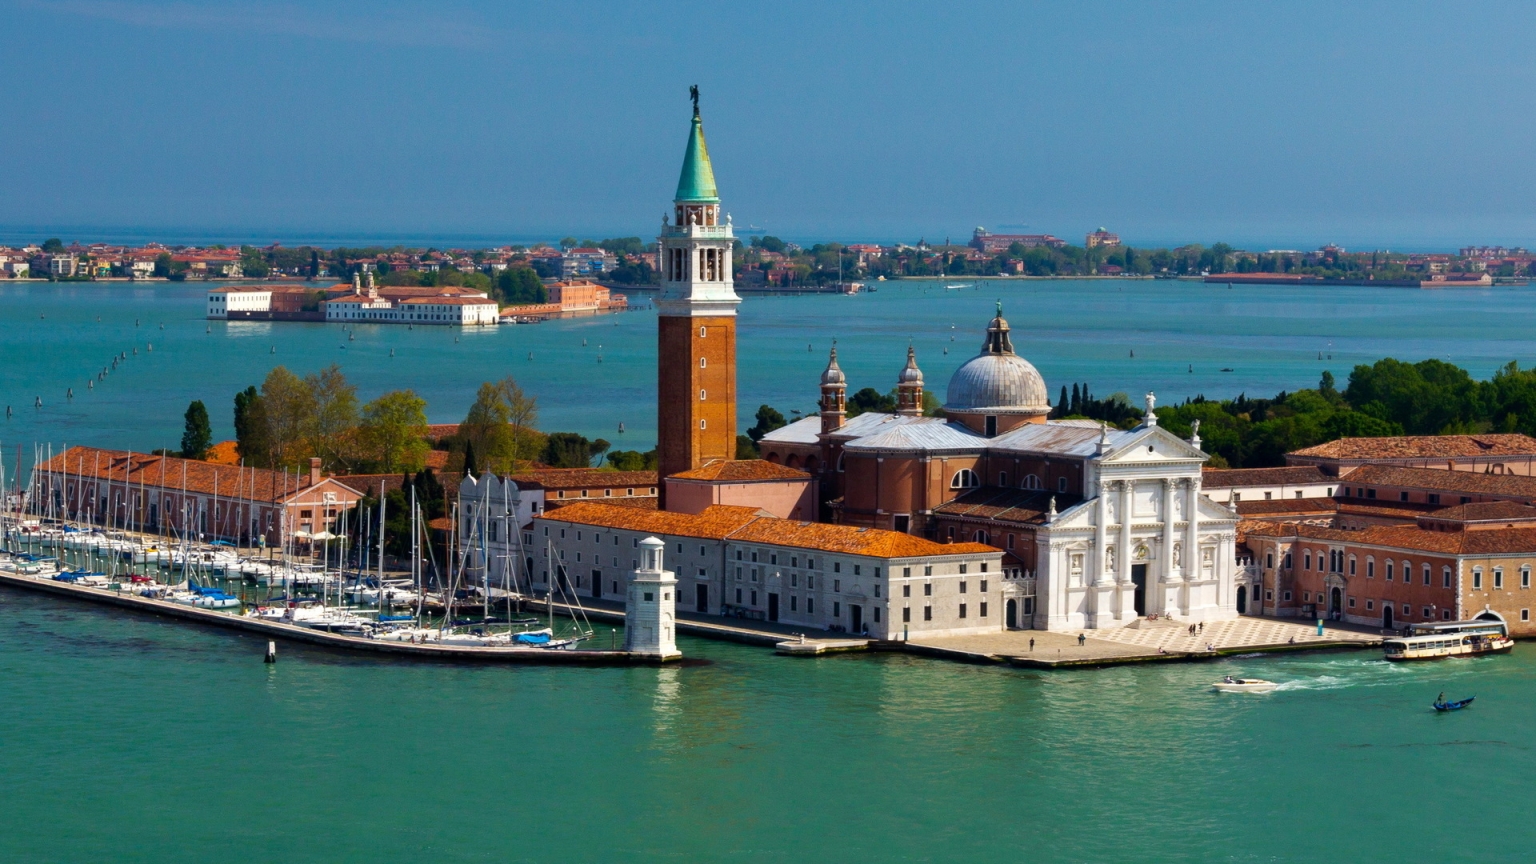 Island San Giorgio Maggiore Venice for 1536 x 864 HDTV resolution